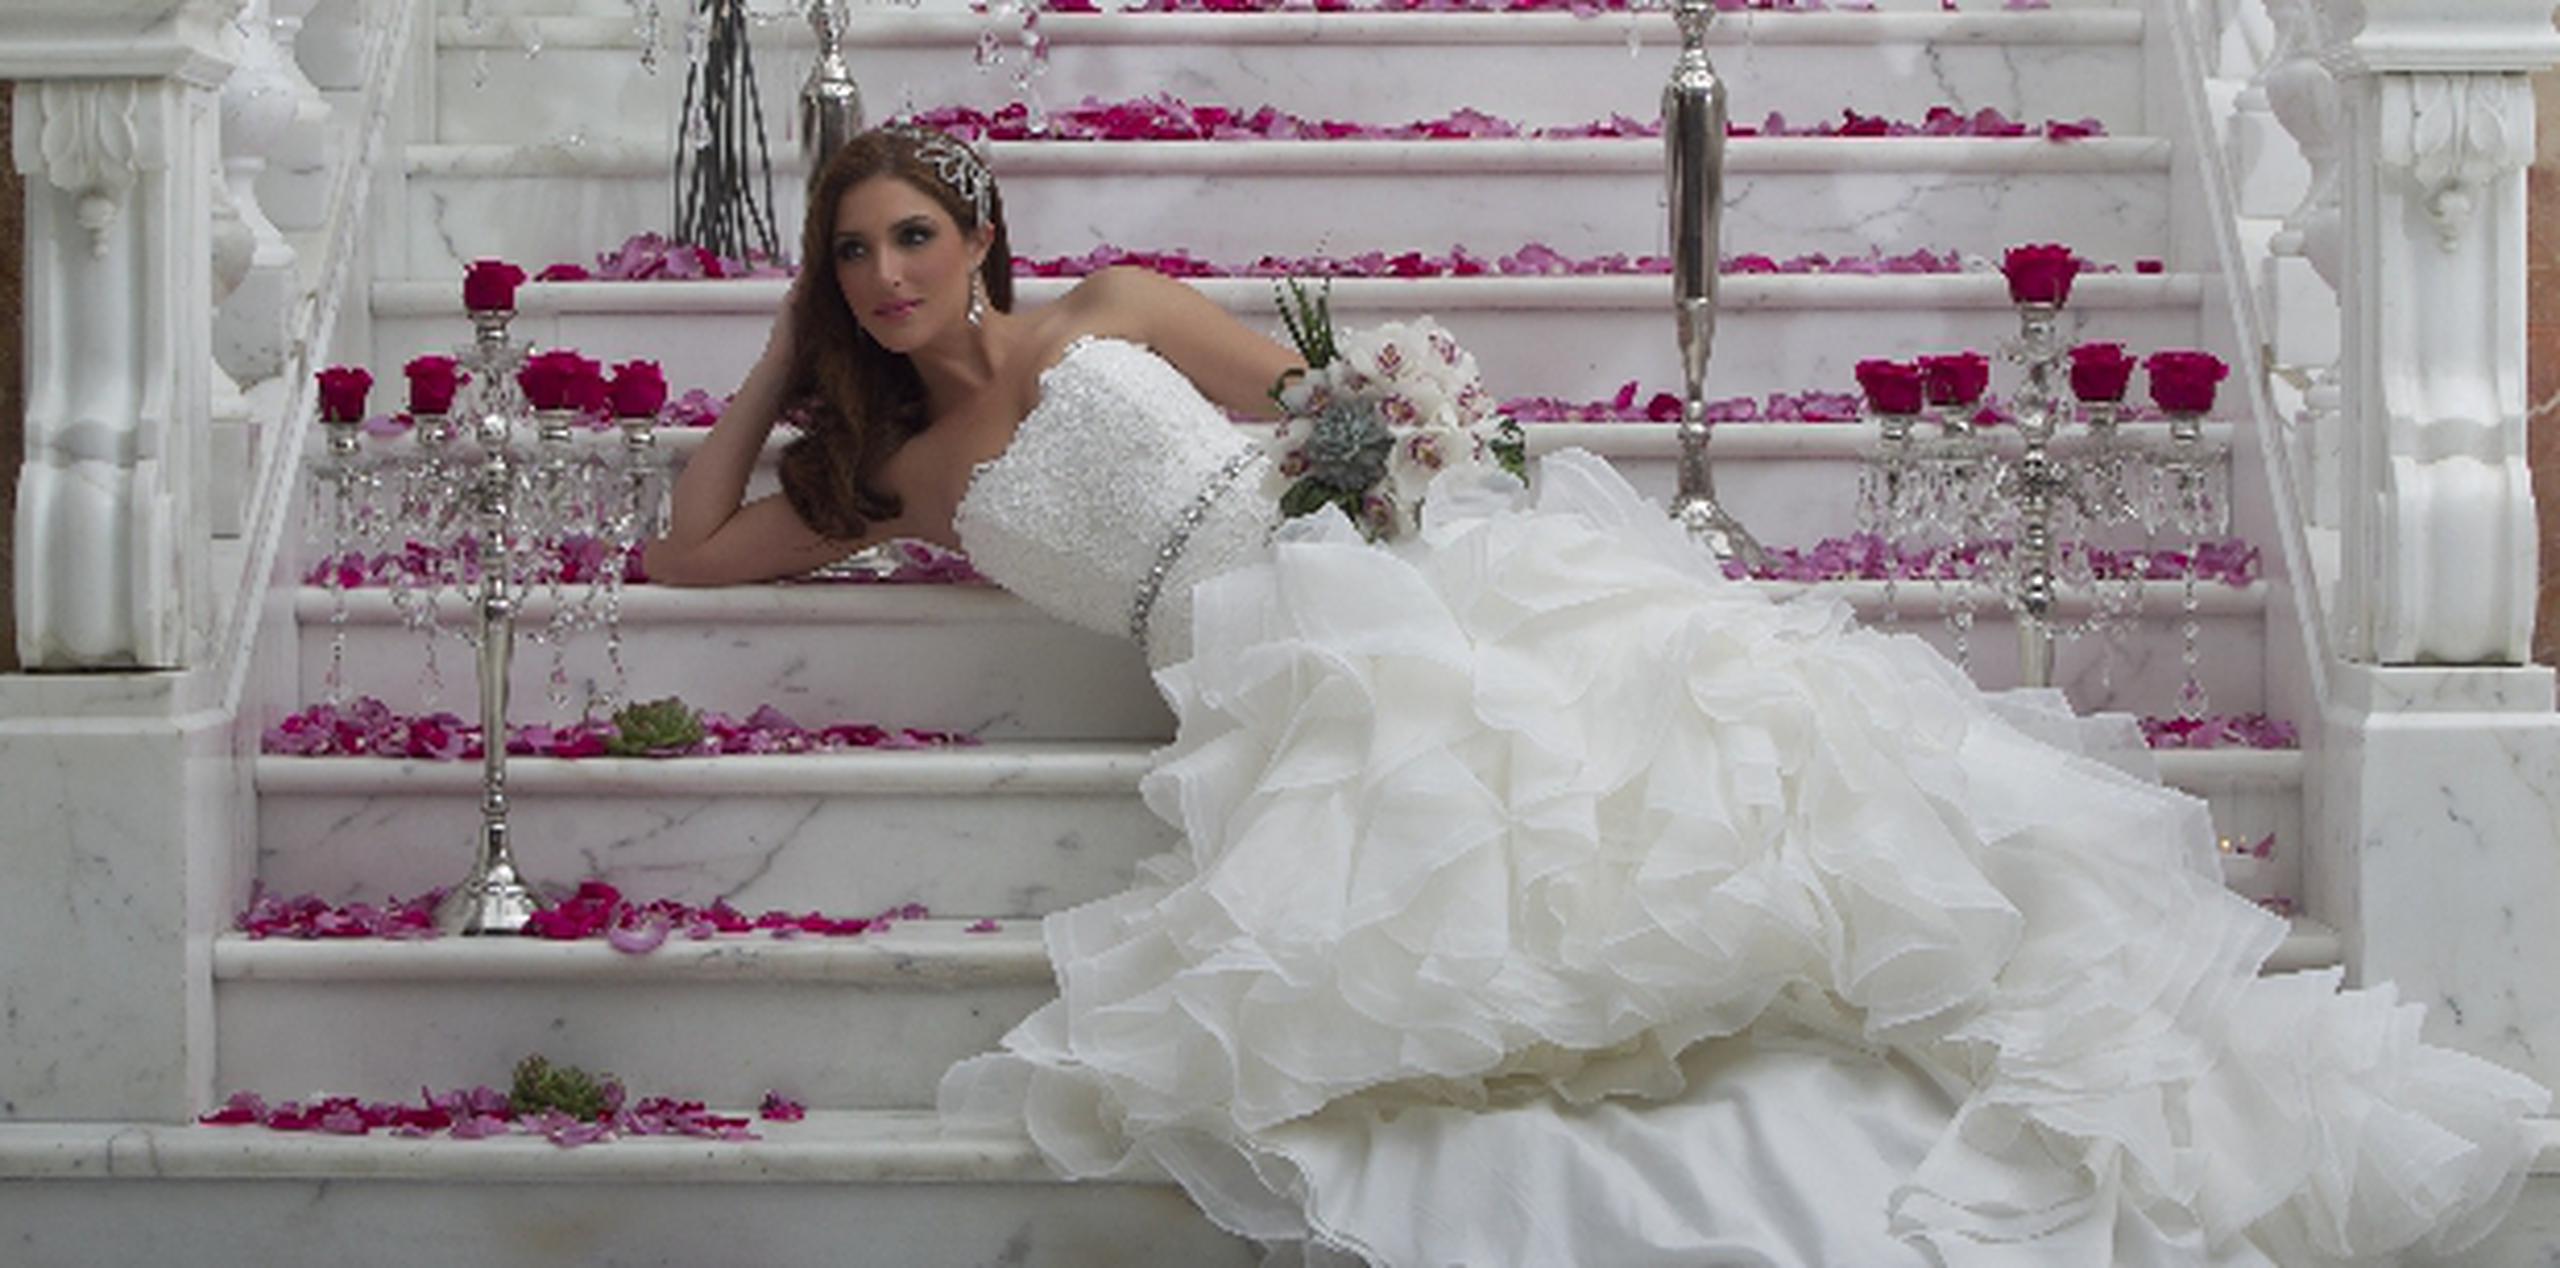 Katiria Soto posa con las últimas tendencias en vestidos de novia. (andre.kang@gfrmedia.com)